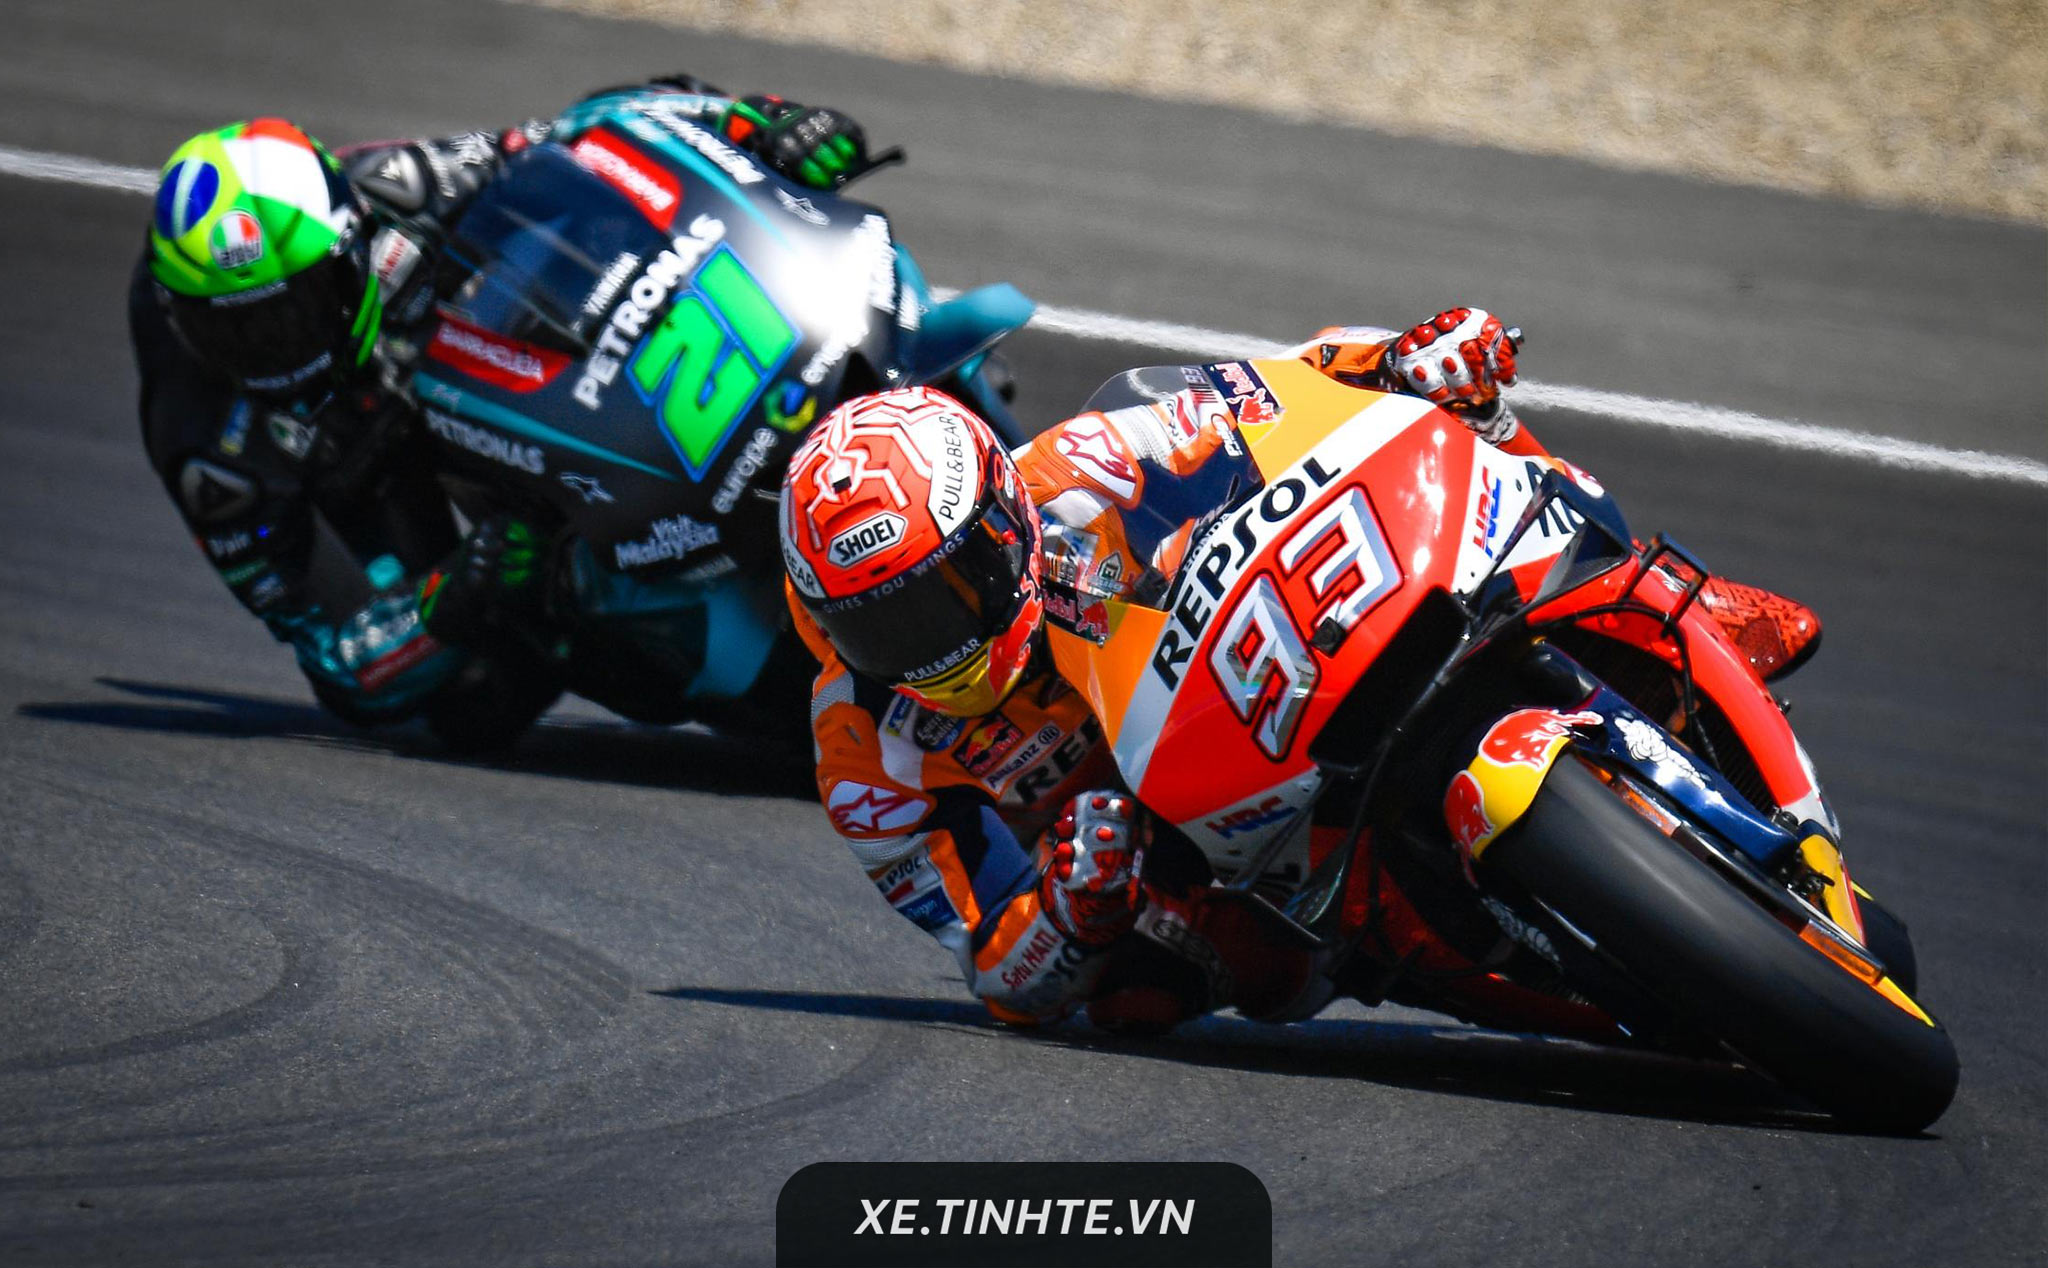 #MotoGP19: Marquez trở lại ngôi đầu sau chiến thắng thuyết phục ở quê nhà